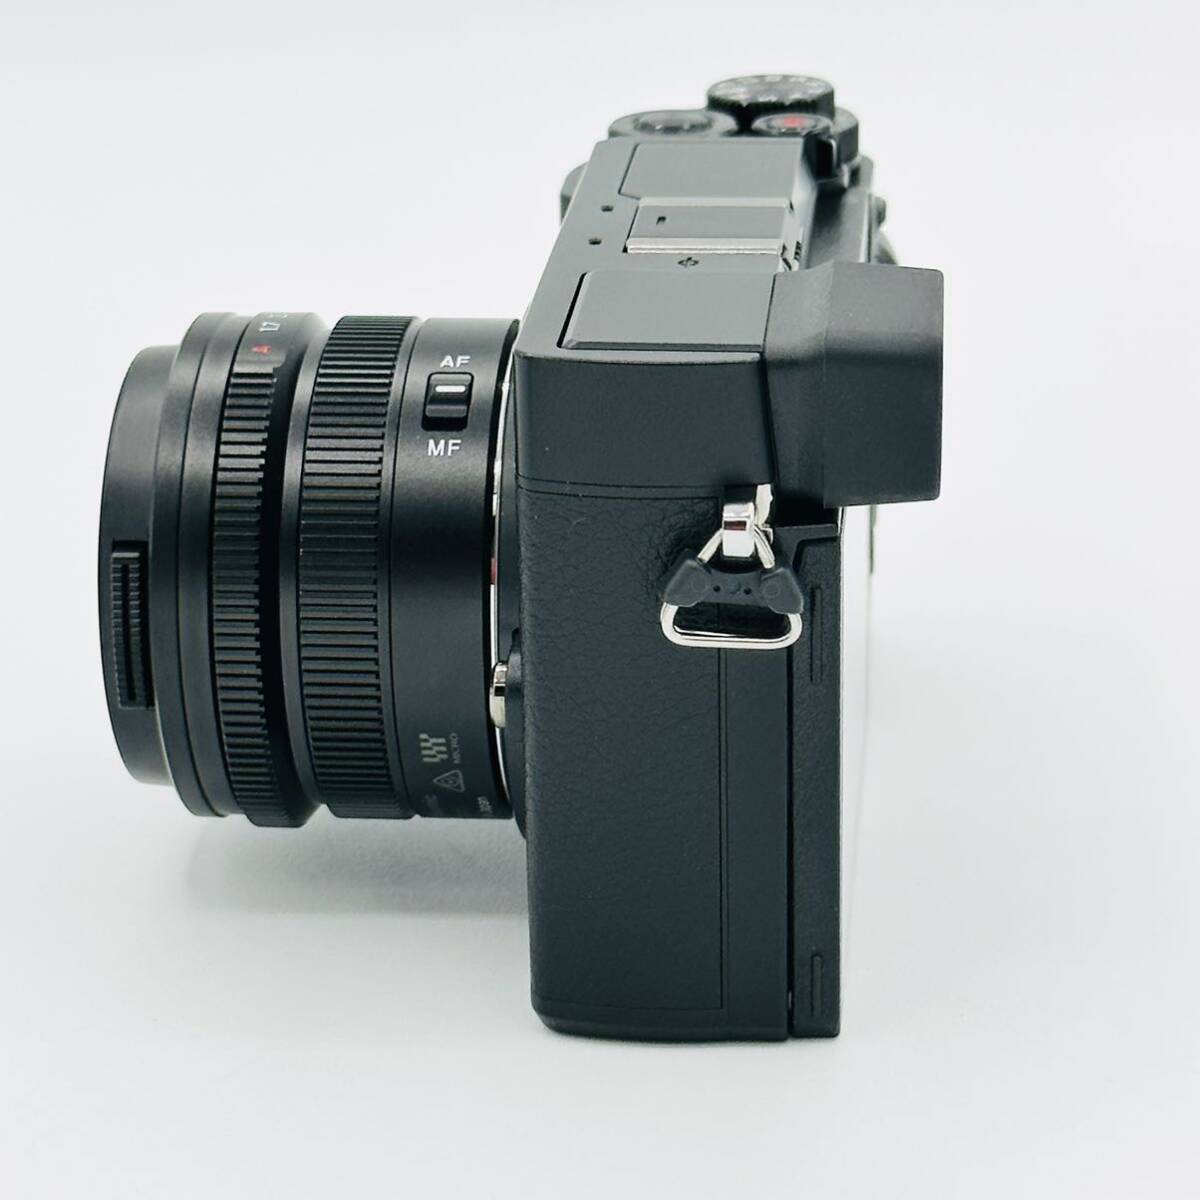 [ почти новый 1144 раз ] Panasonic беззеркальный однообъективный камера Lumix GX7MK3 одиночный подпалина пункт Leica DG линзы комплект черный DC-GX7MK3L-K